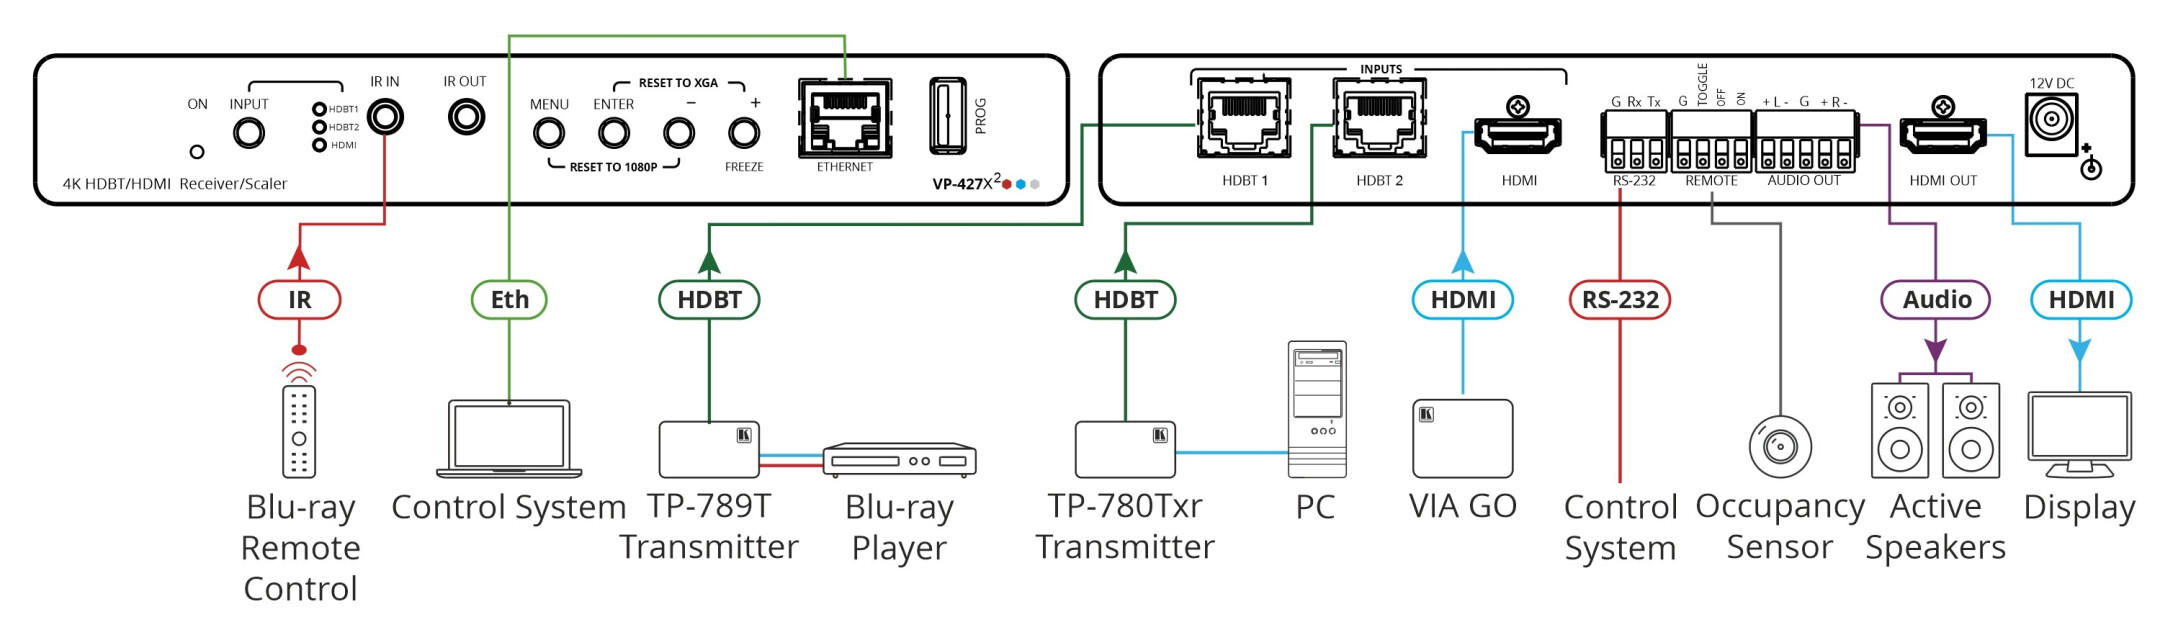 Kramer-VP-427X24K-HDR-HDBT-ontvanger-Scaler-mit-2-HDBaseT-ingangen-en-1-HDMI-ingang